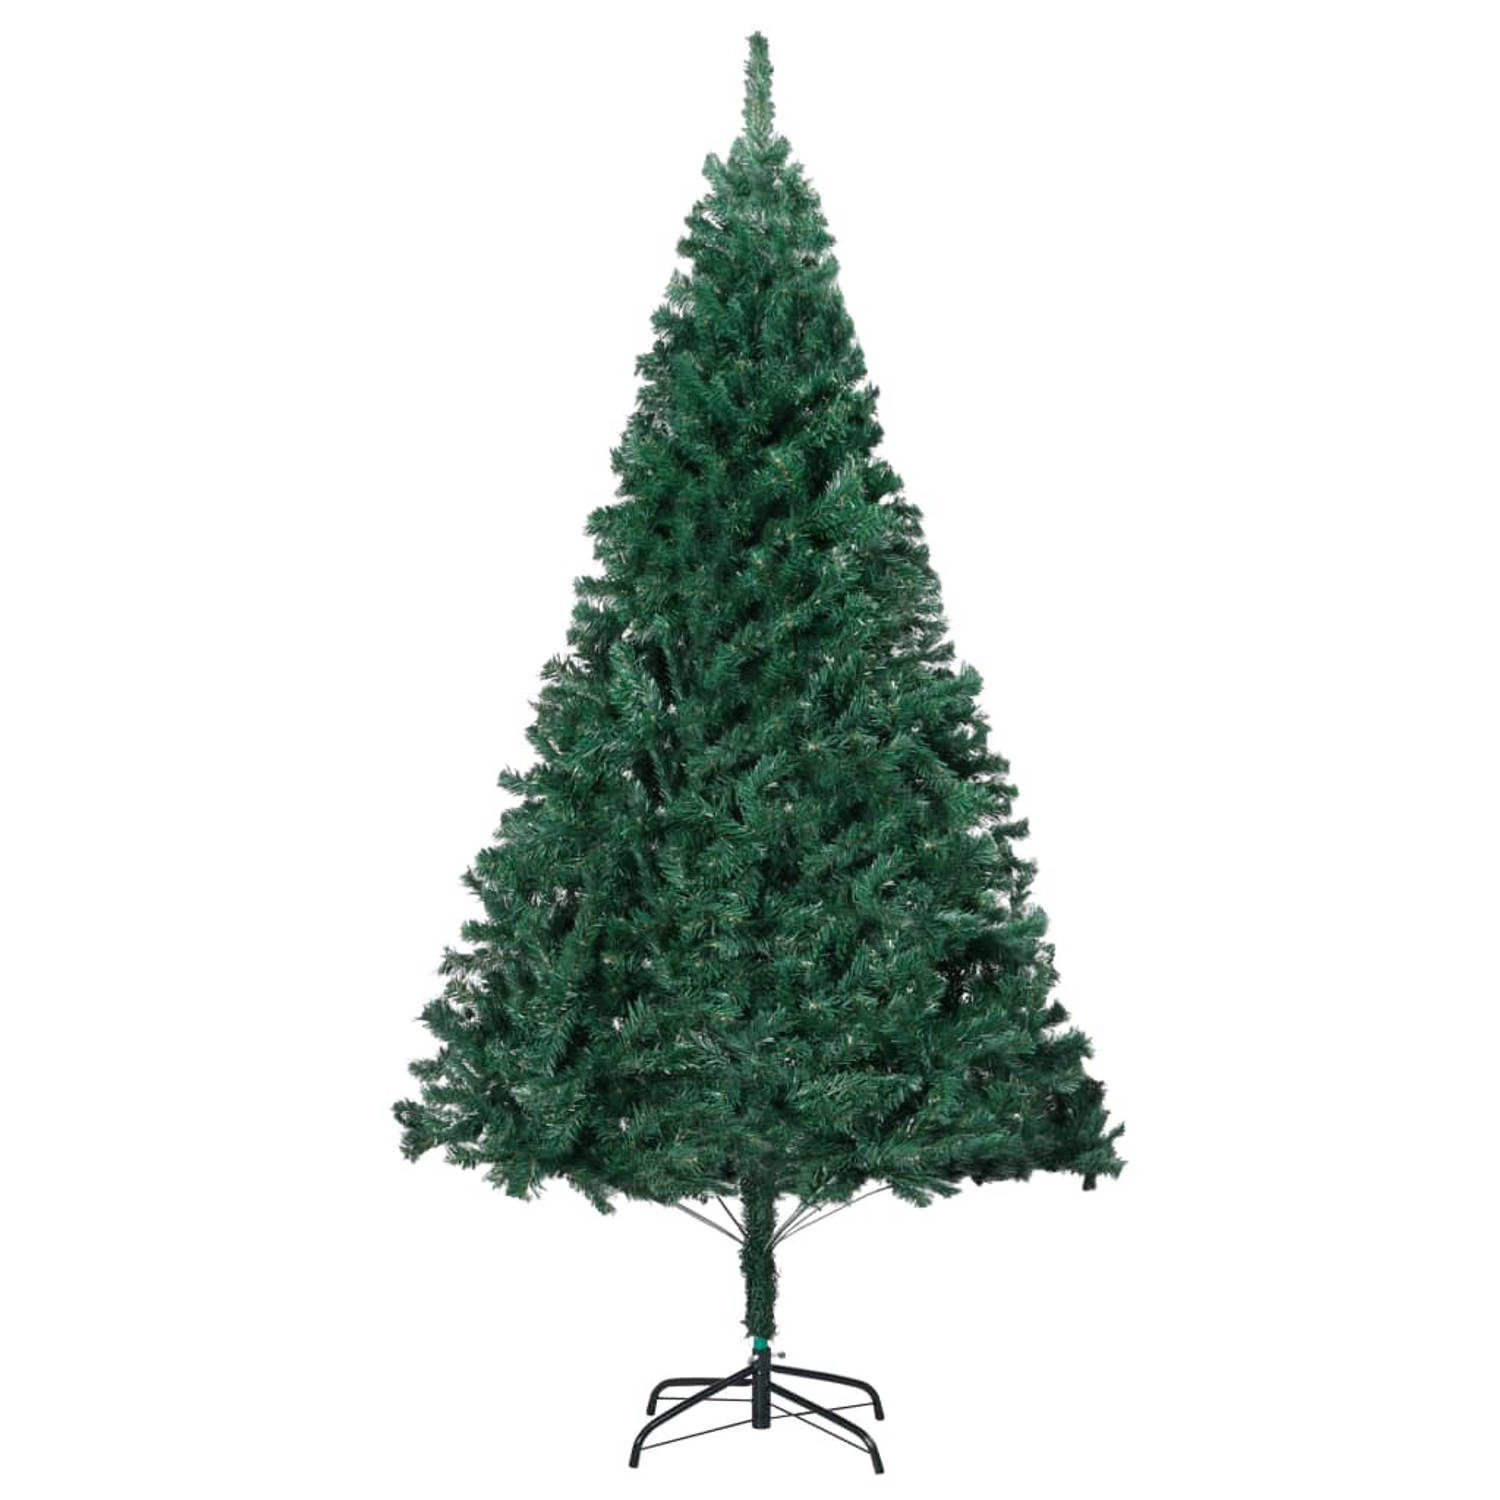 The Living Store Kunstkerstboom met dikke takken 120 cm PVC groen - Decoratieve kerstboom